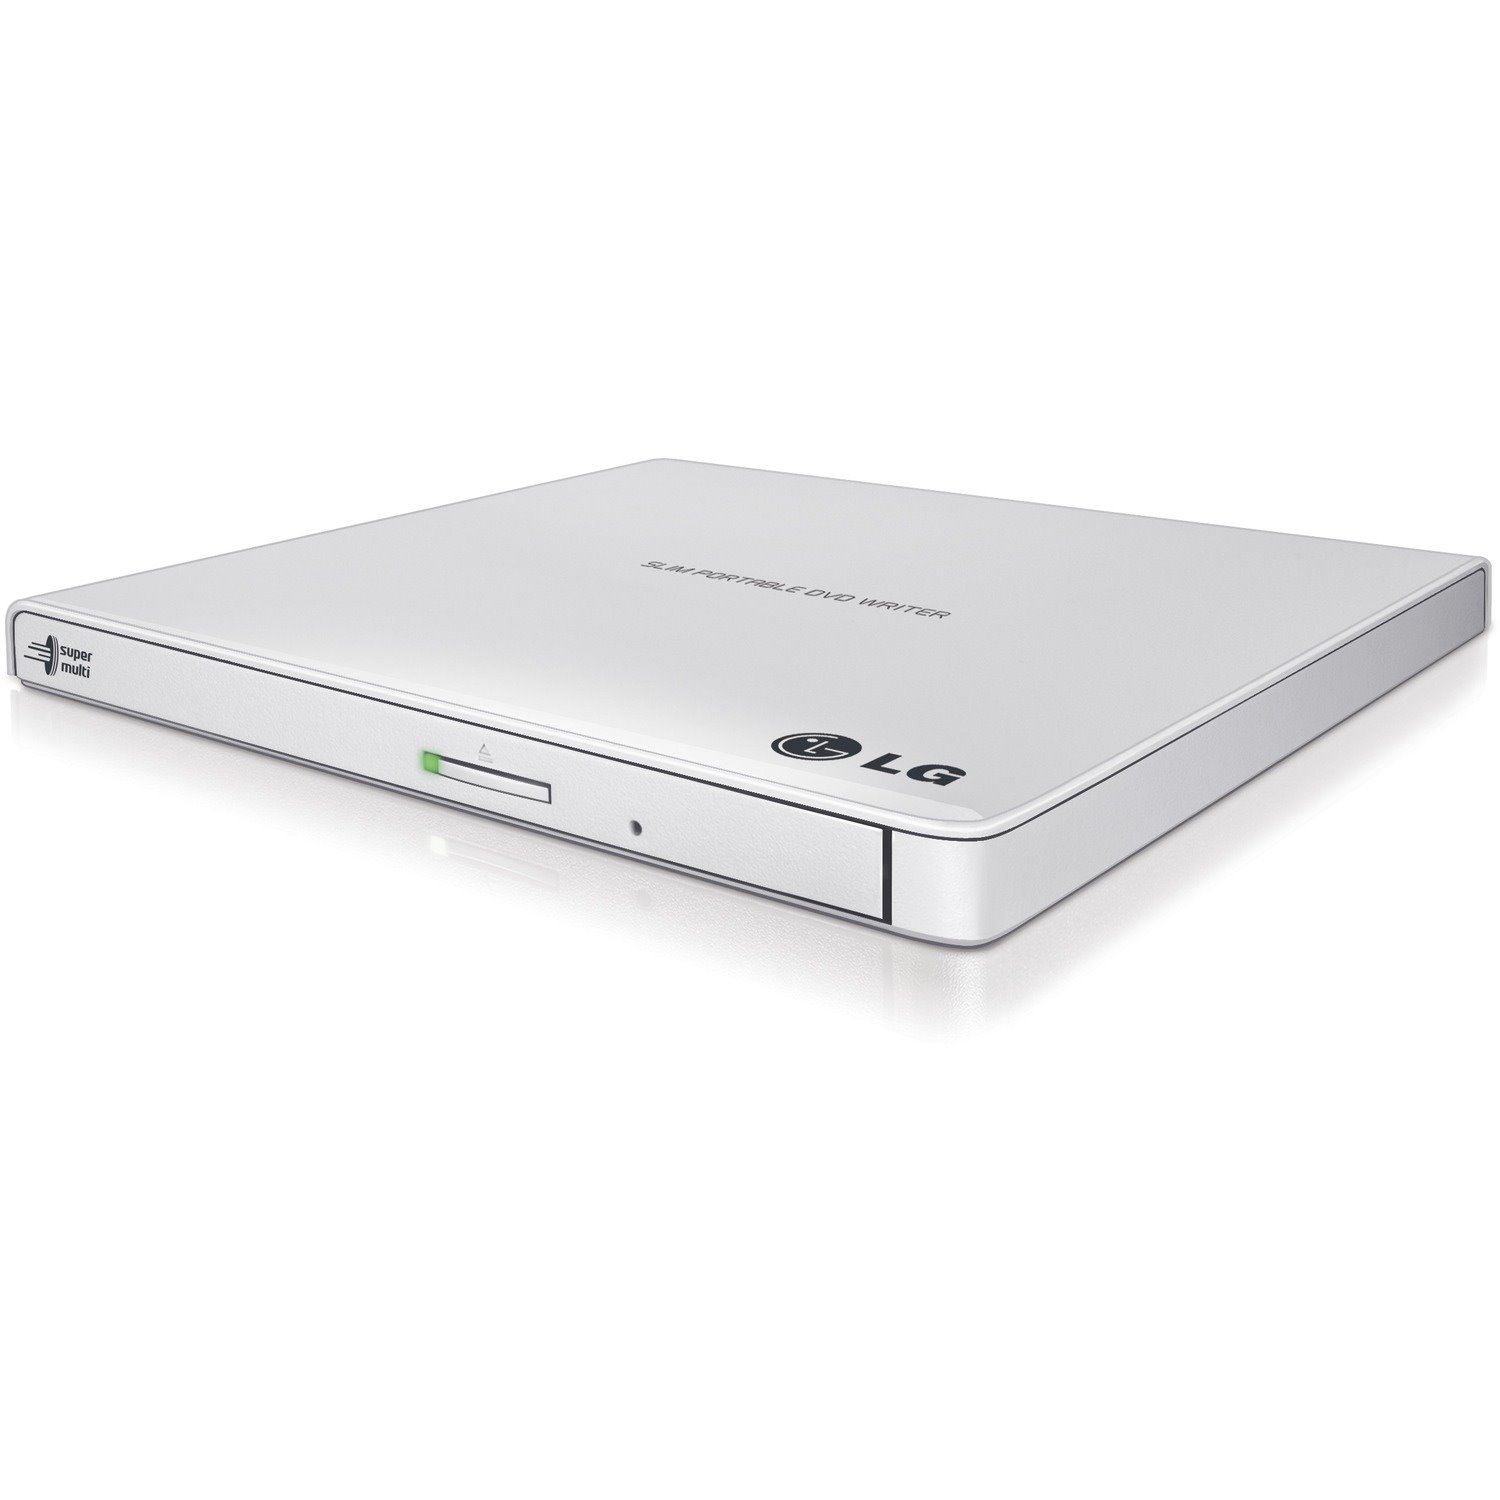 LG GP65NW60 DVD-Writer - Retail Pack - White